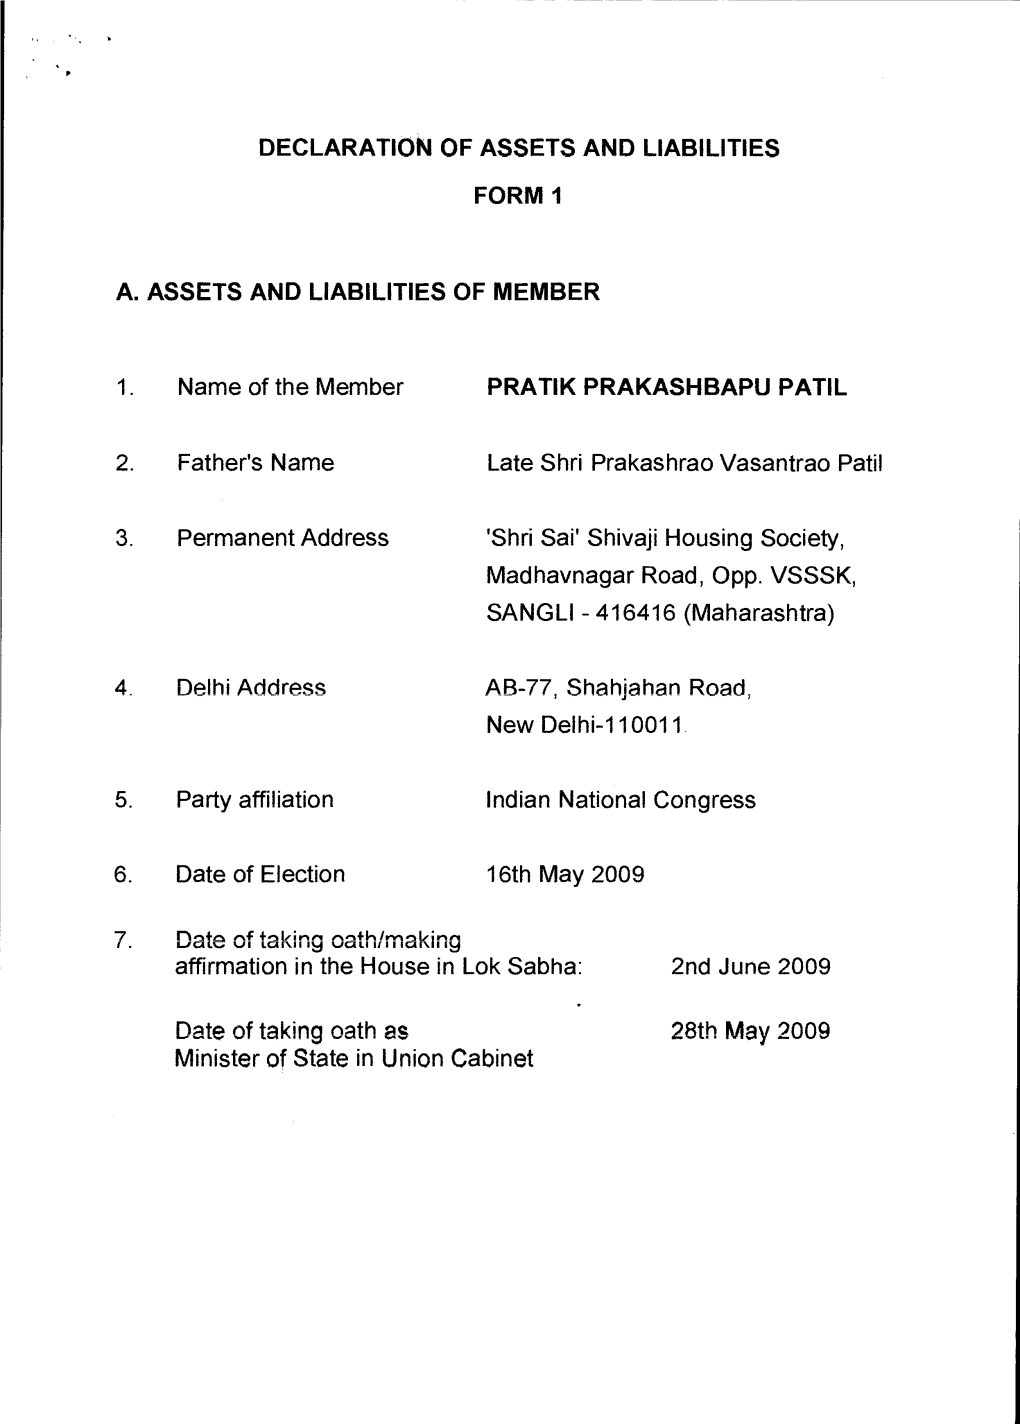 Shri Prateek Prakashbapu Patil